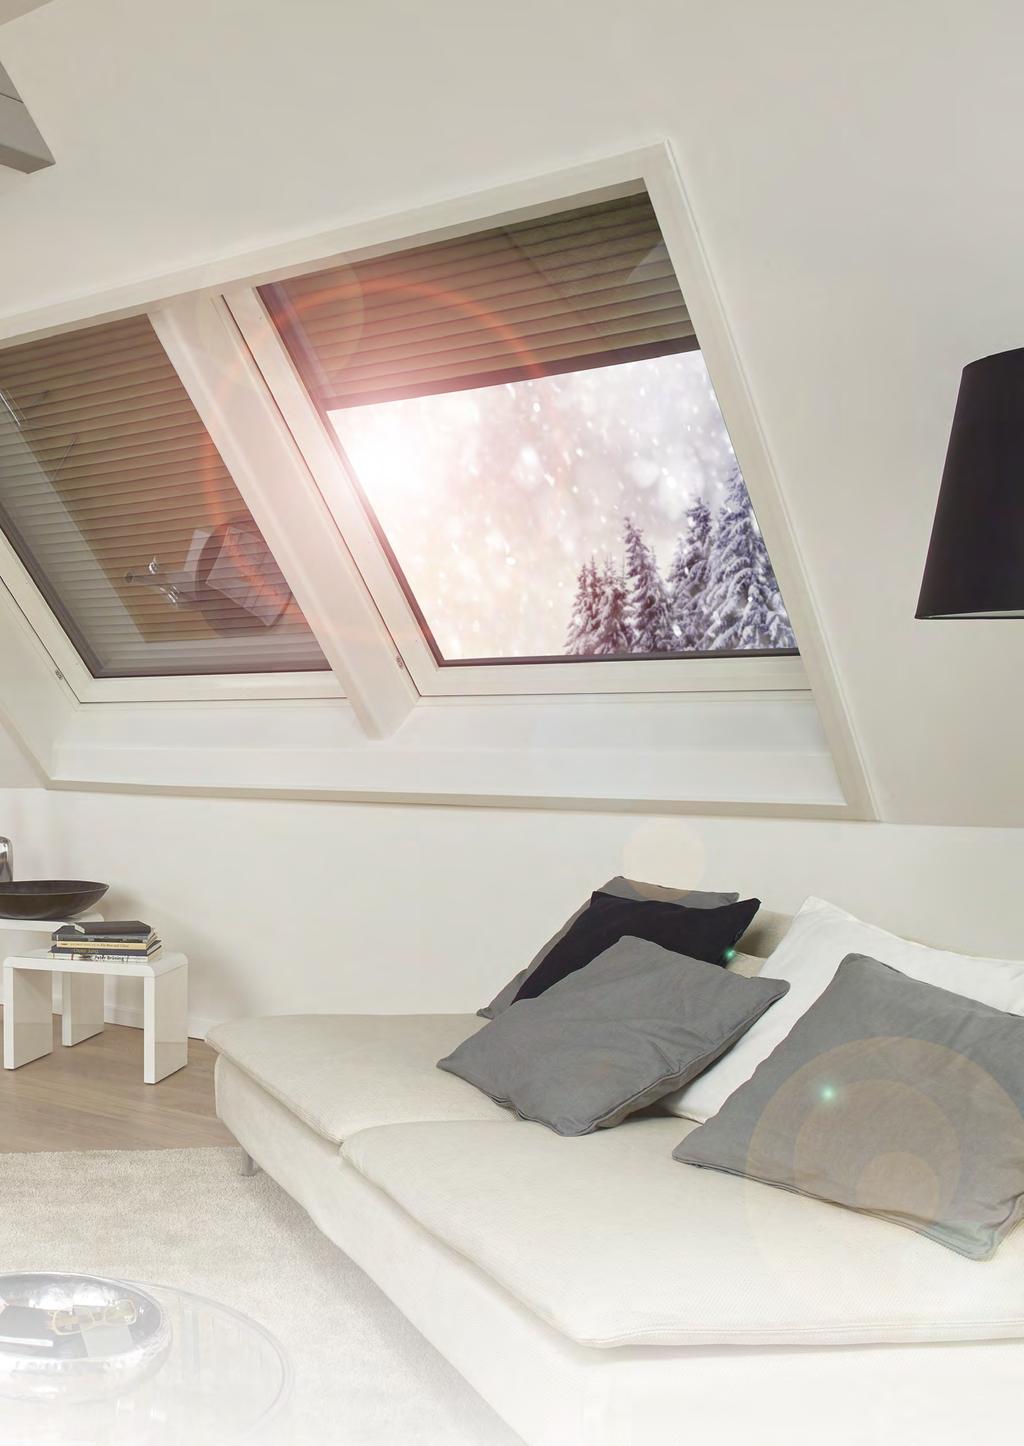 Die Wärmedämmung von Dachfenstern wird durch geschlossene Außenrollläden erheblich verbessert.